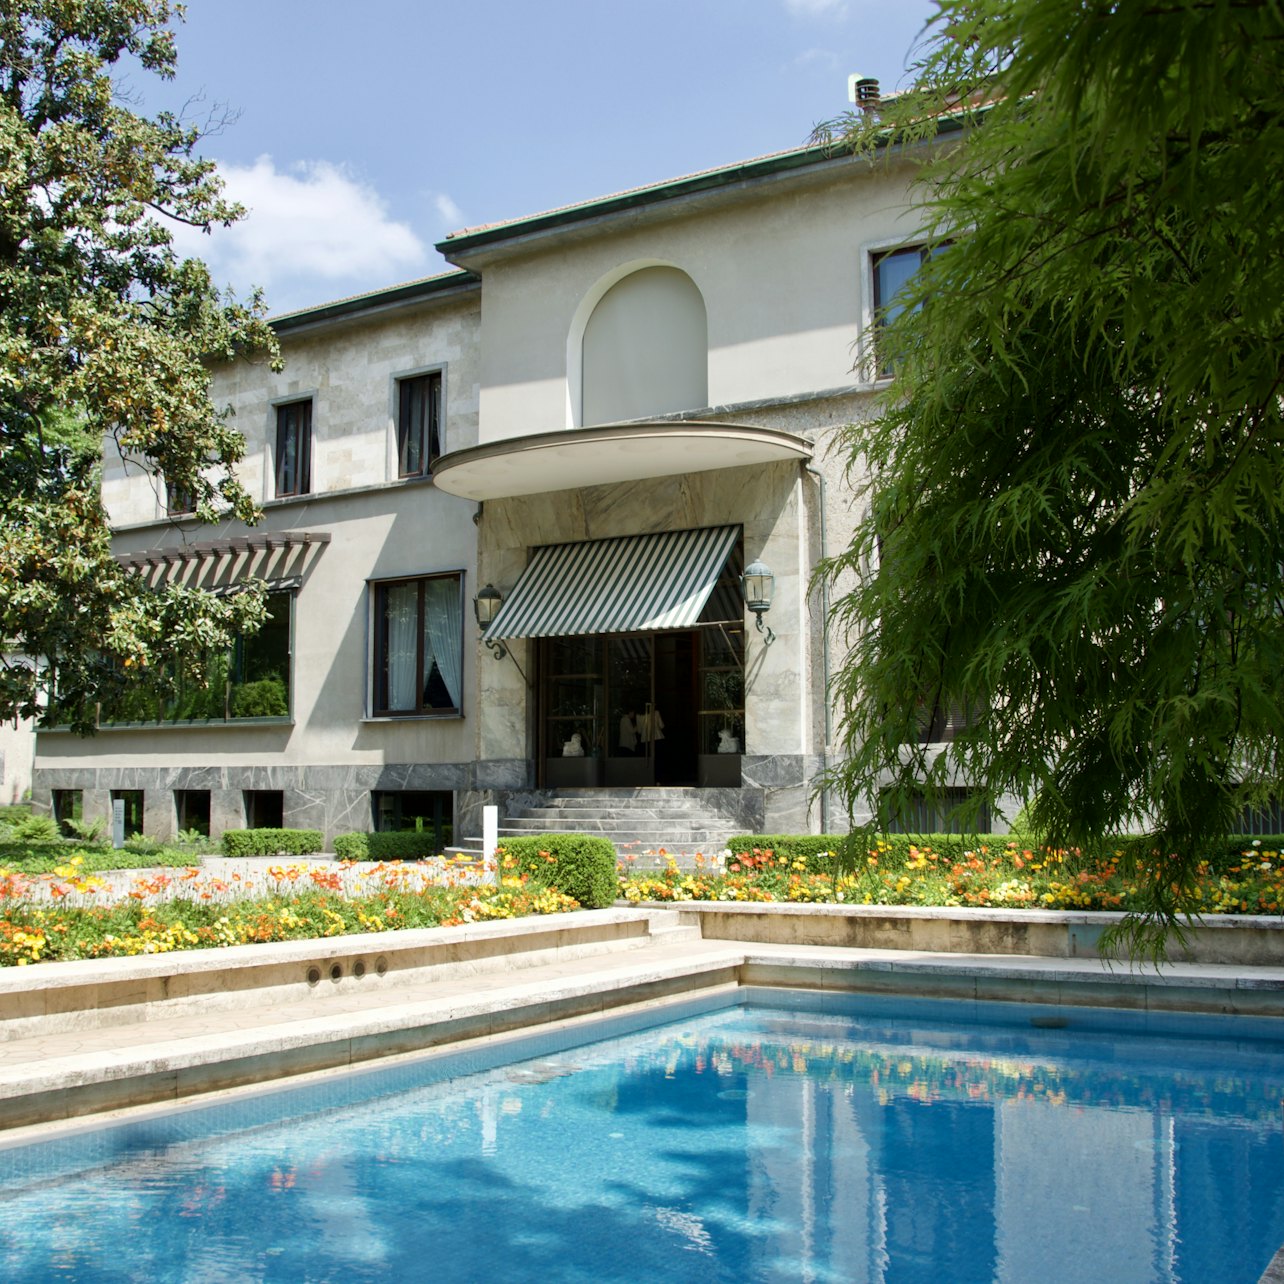 Villa Necchi Campiglio - Acomodações em Milão